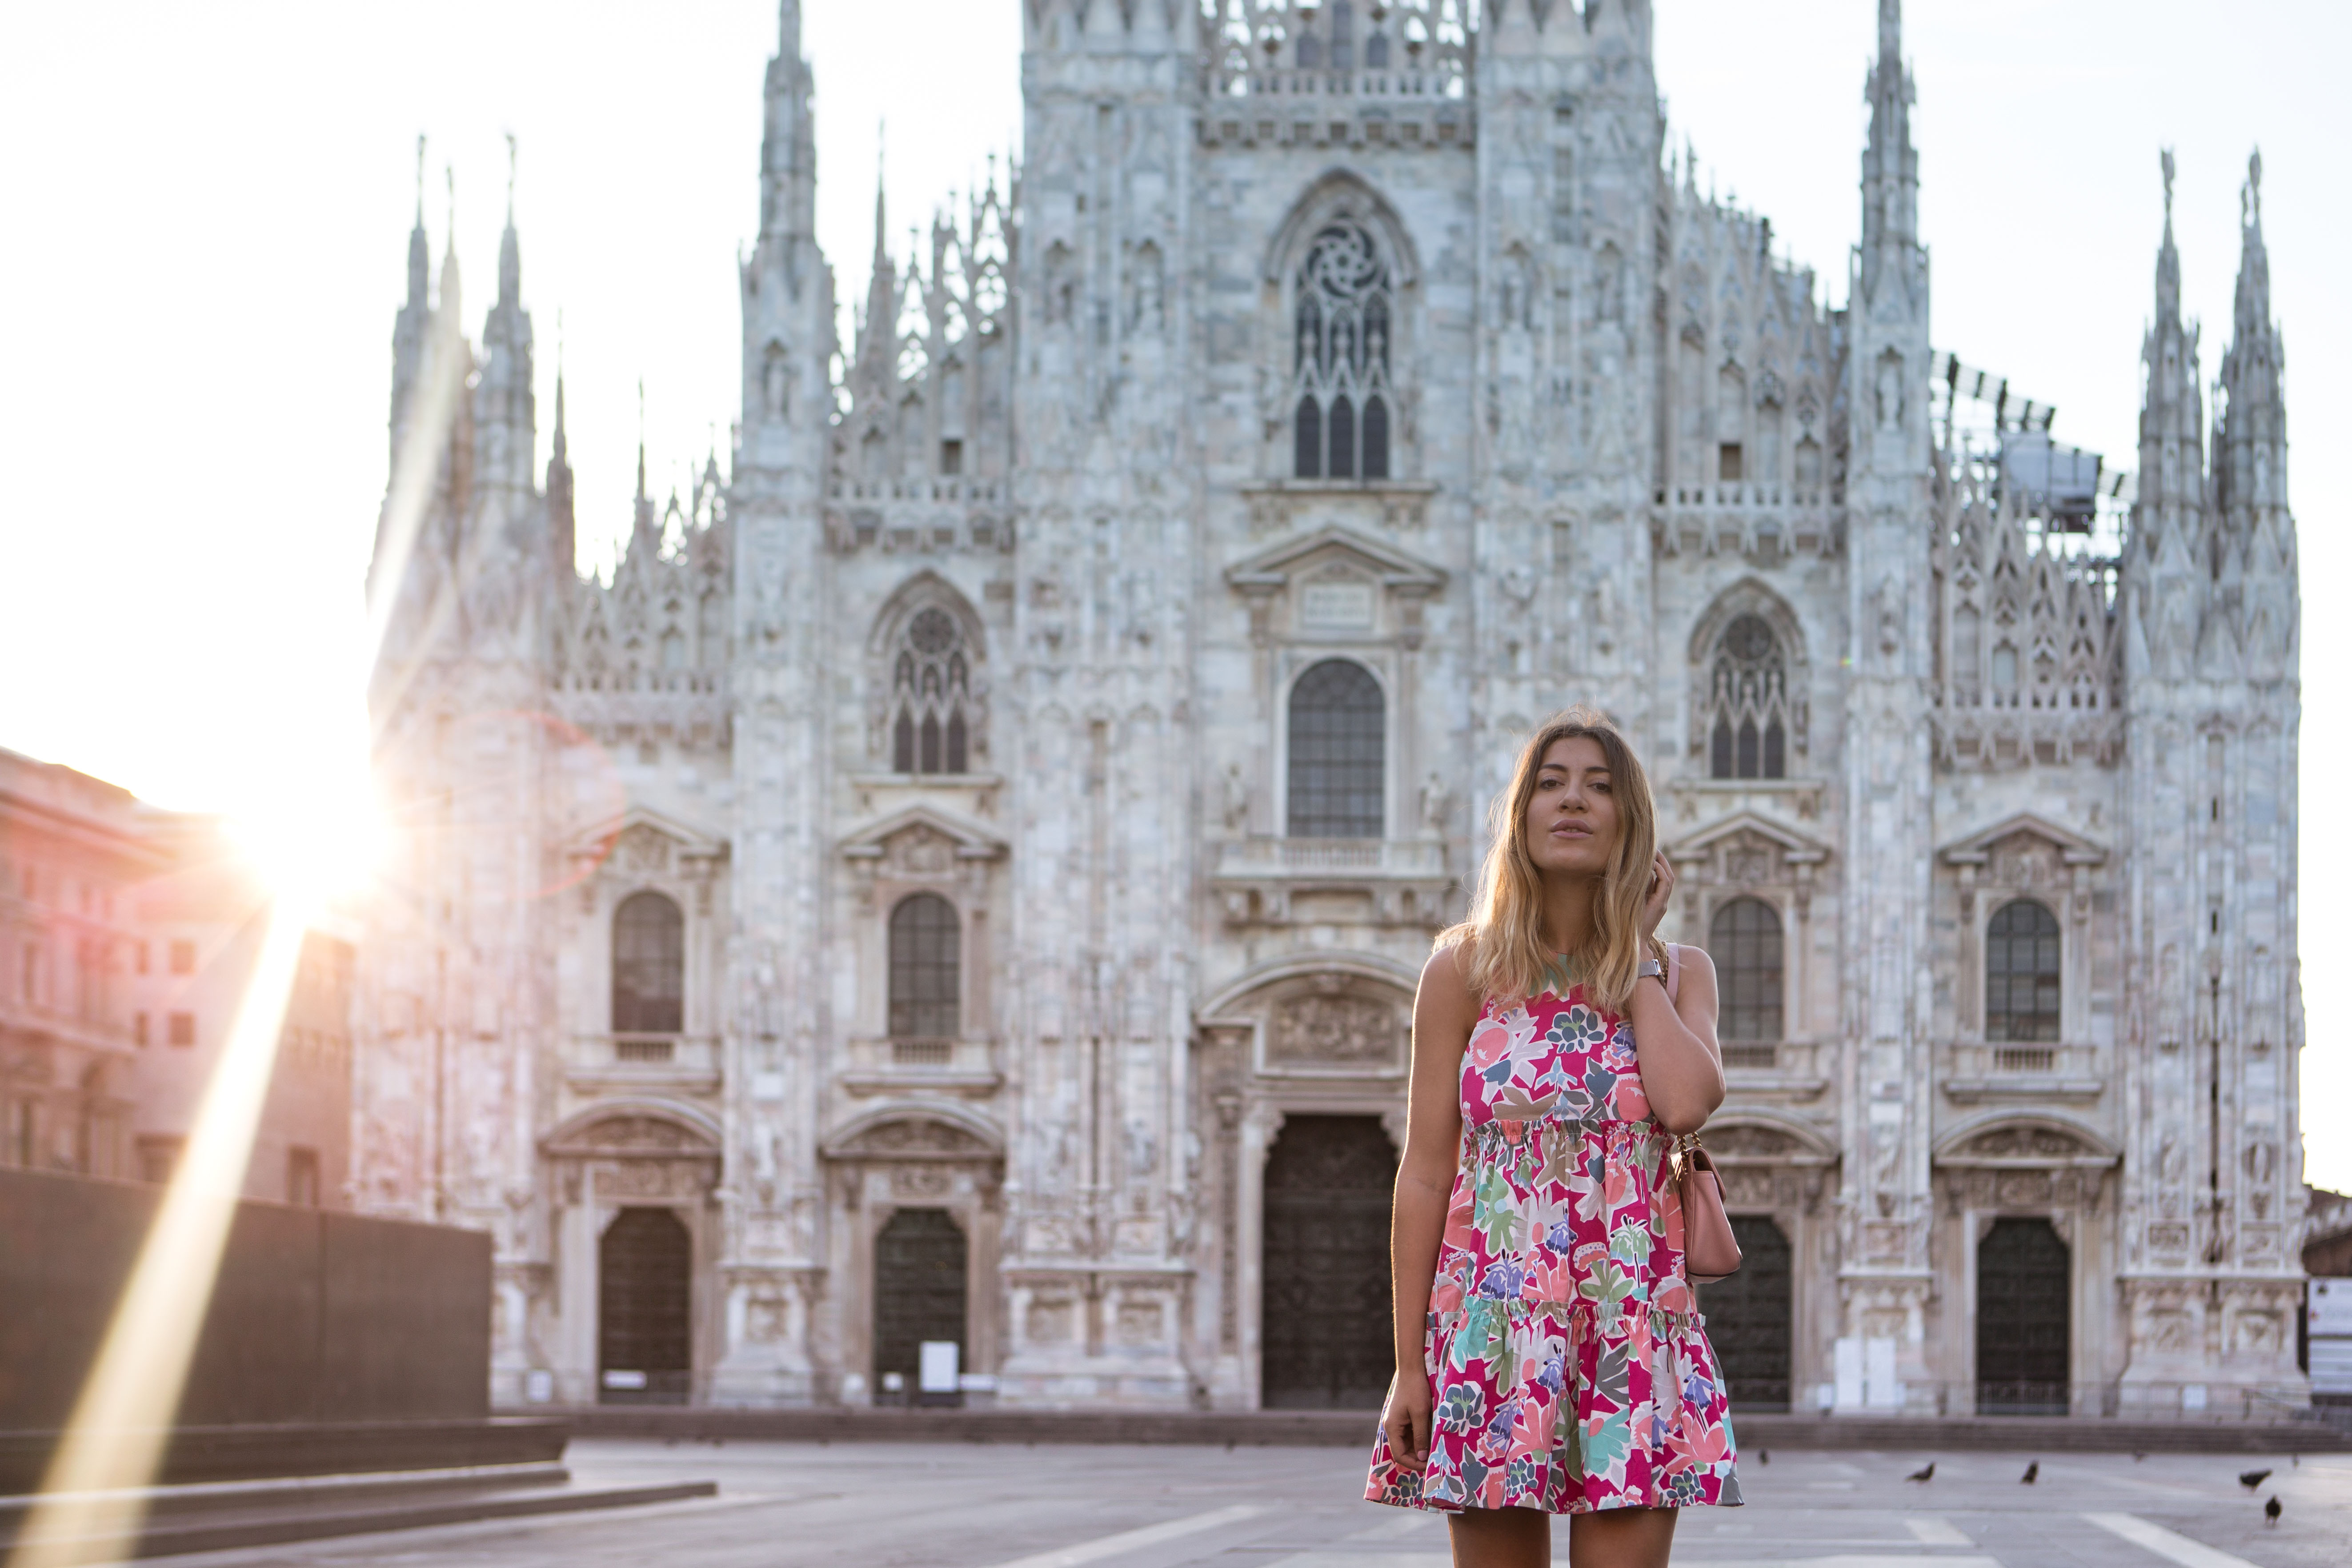 Milan-Duomo_-4 Duomo Milan: what I wore and the best time to visit